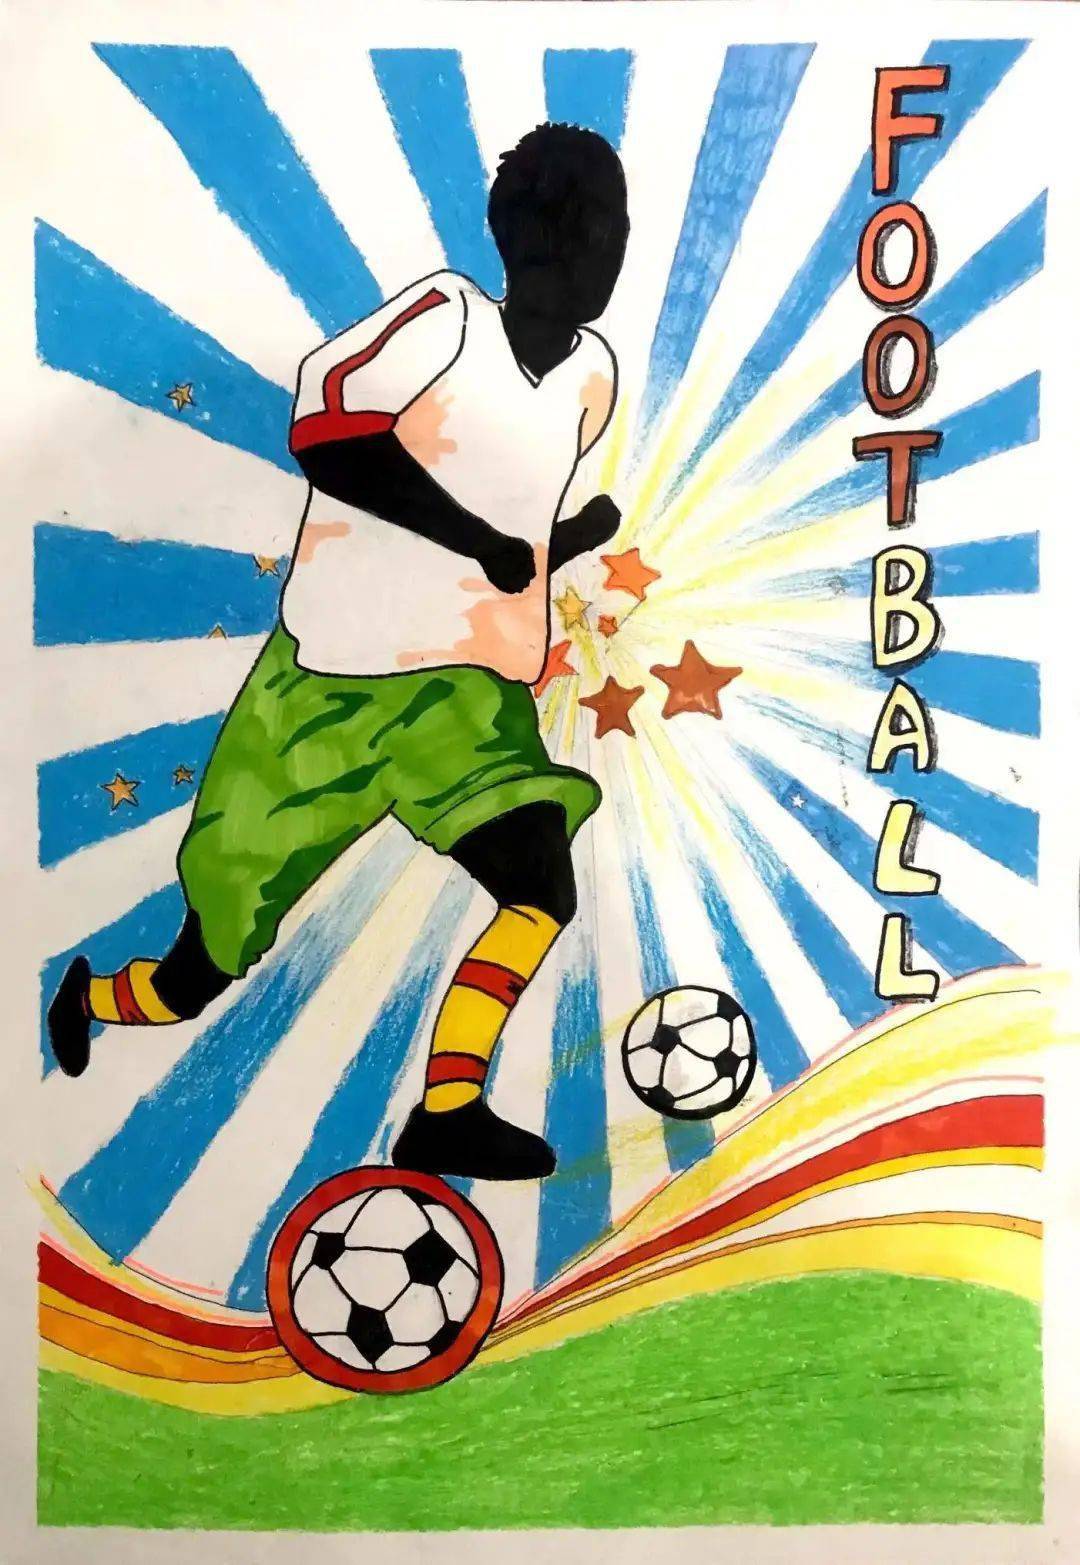 魅力足球 欢乐校园——记初中部足球海报设计大赛